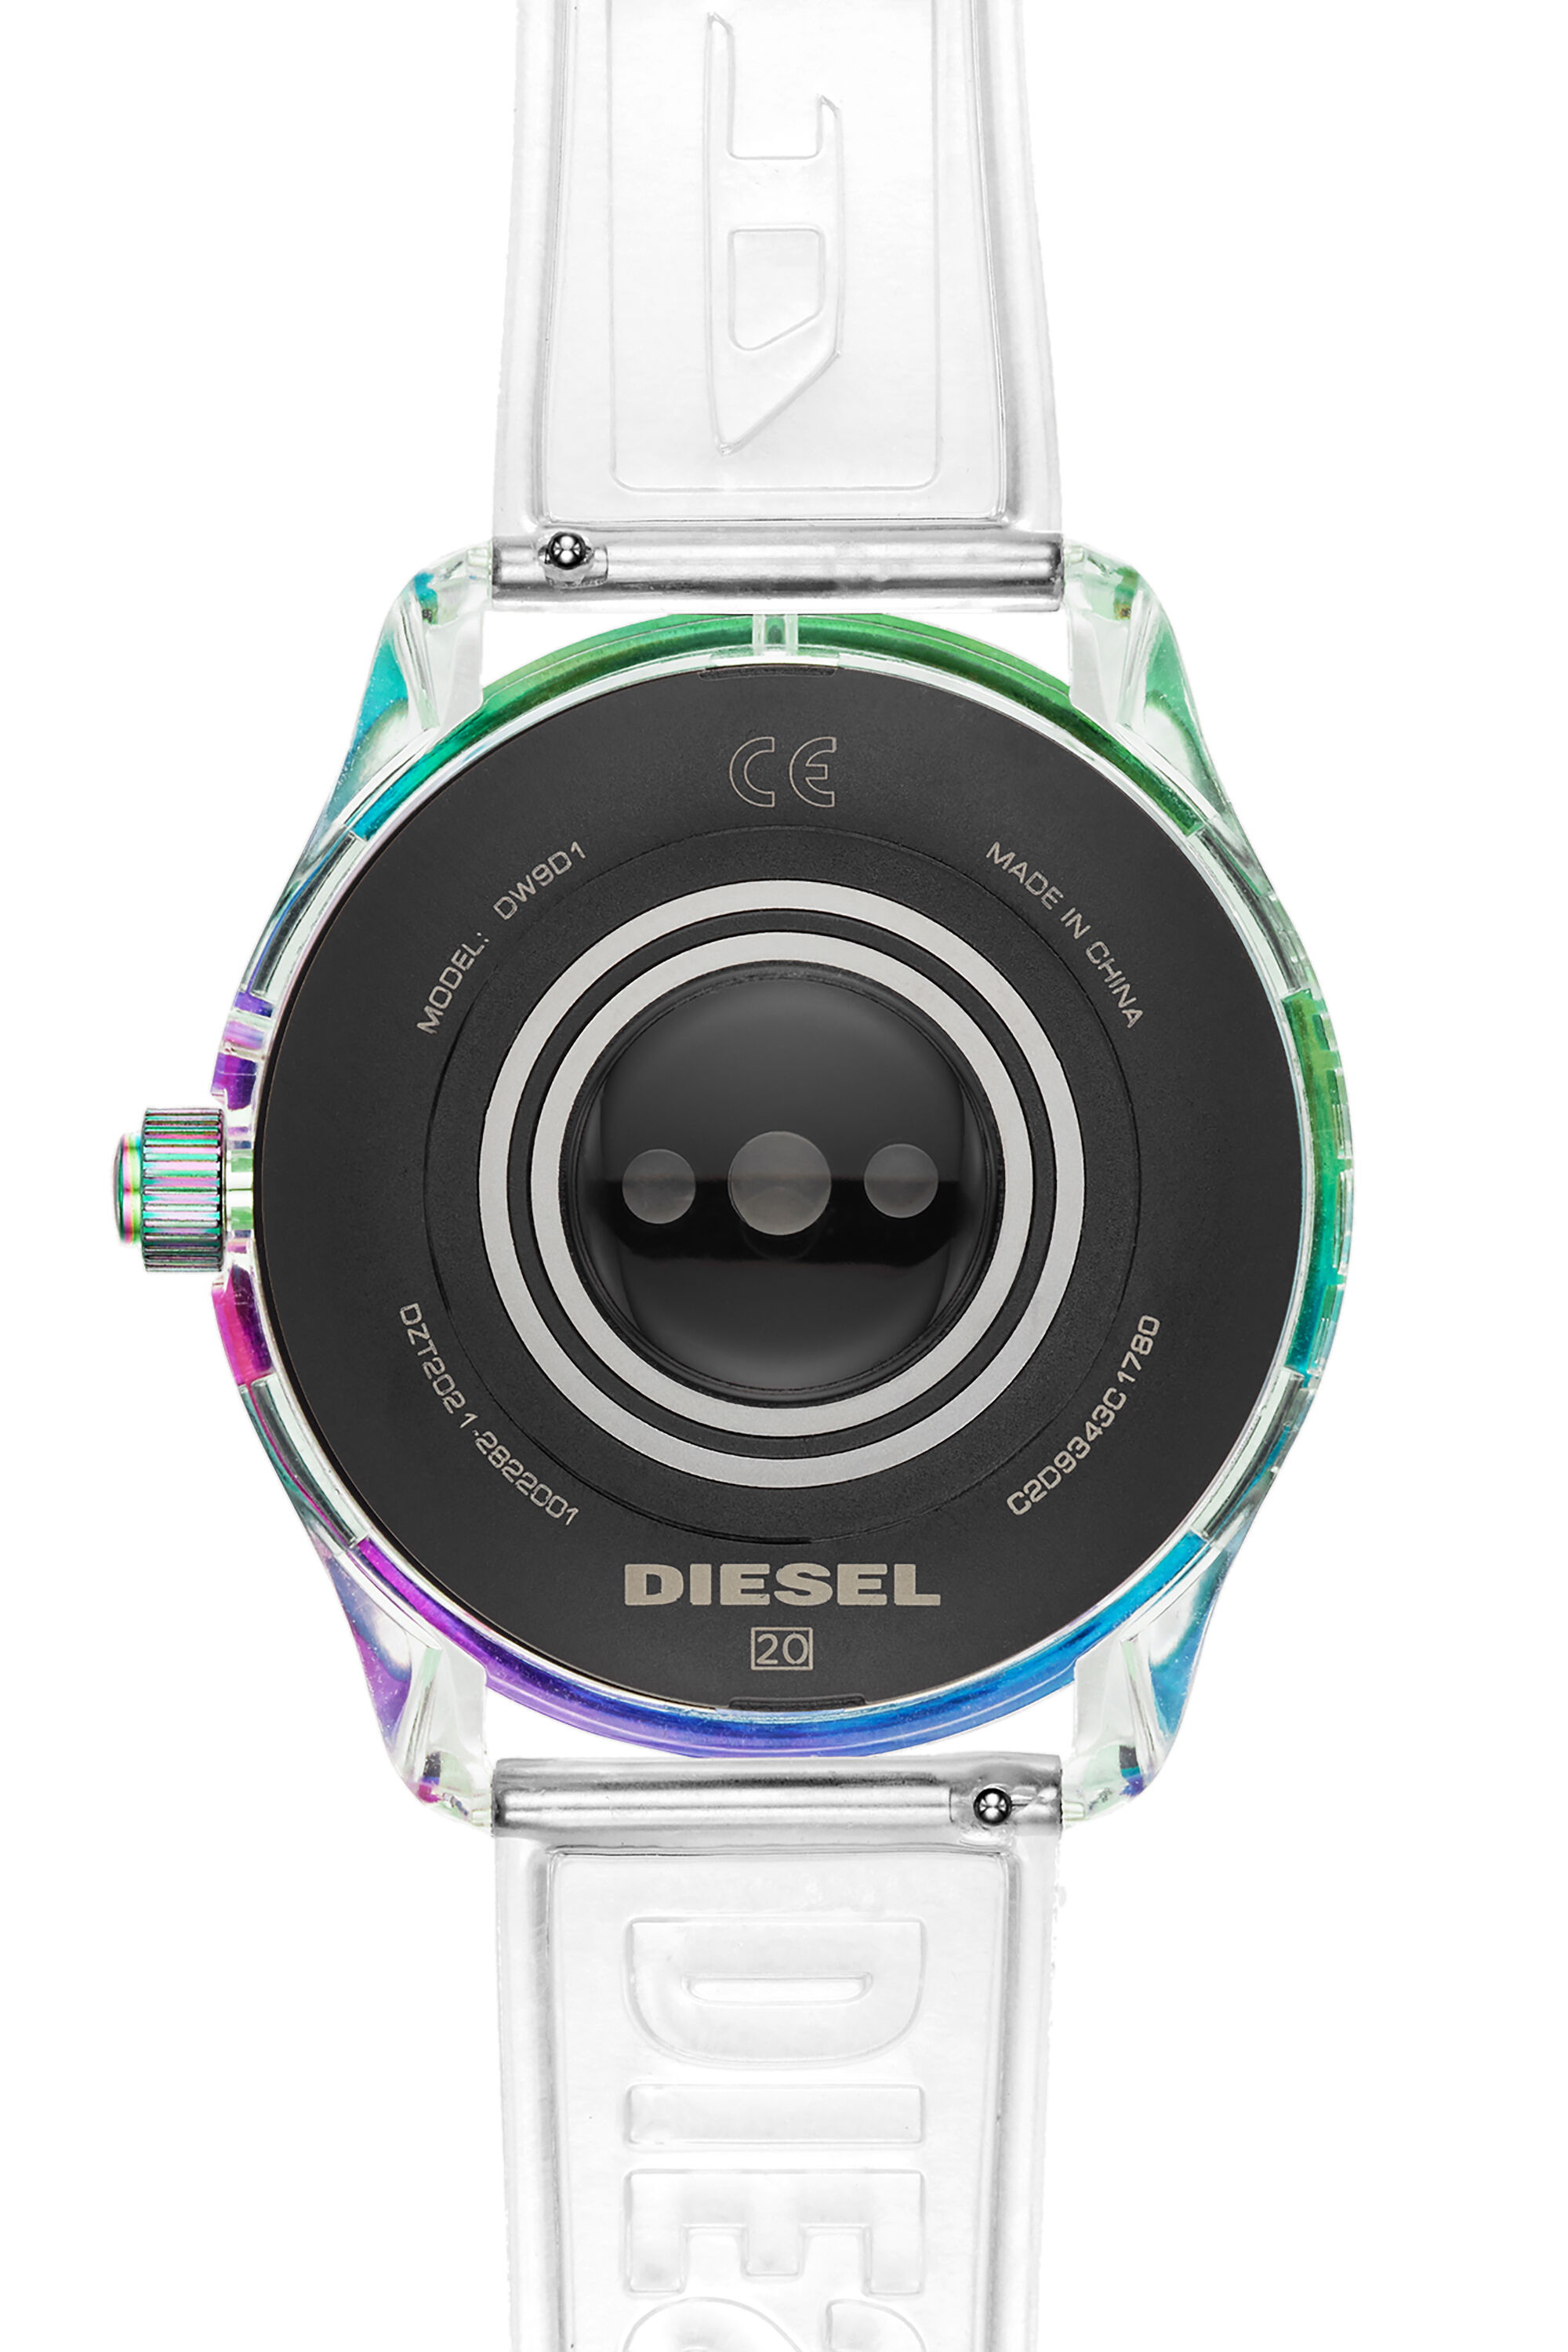 Diesel - DT2021, Blanco - Image 4